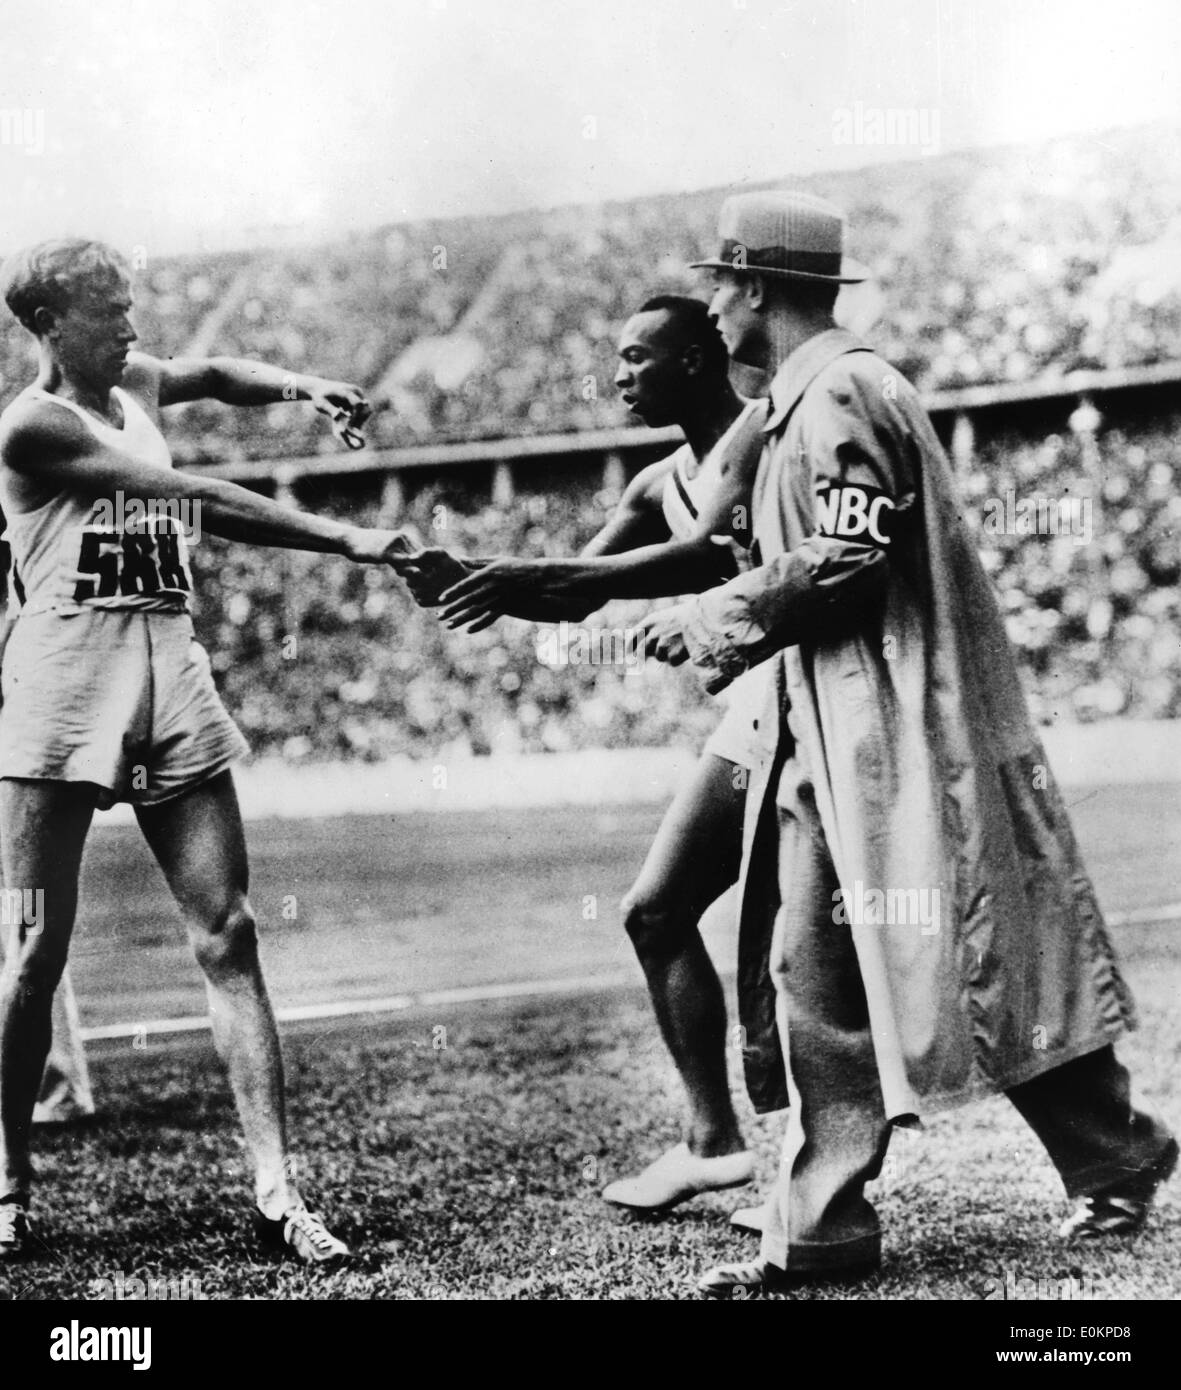 El atleta estadounidense Jesse Owens durante los Juegos Olímpicos de Berlín Foto de stock